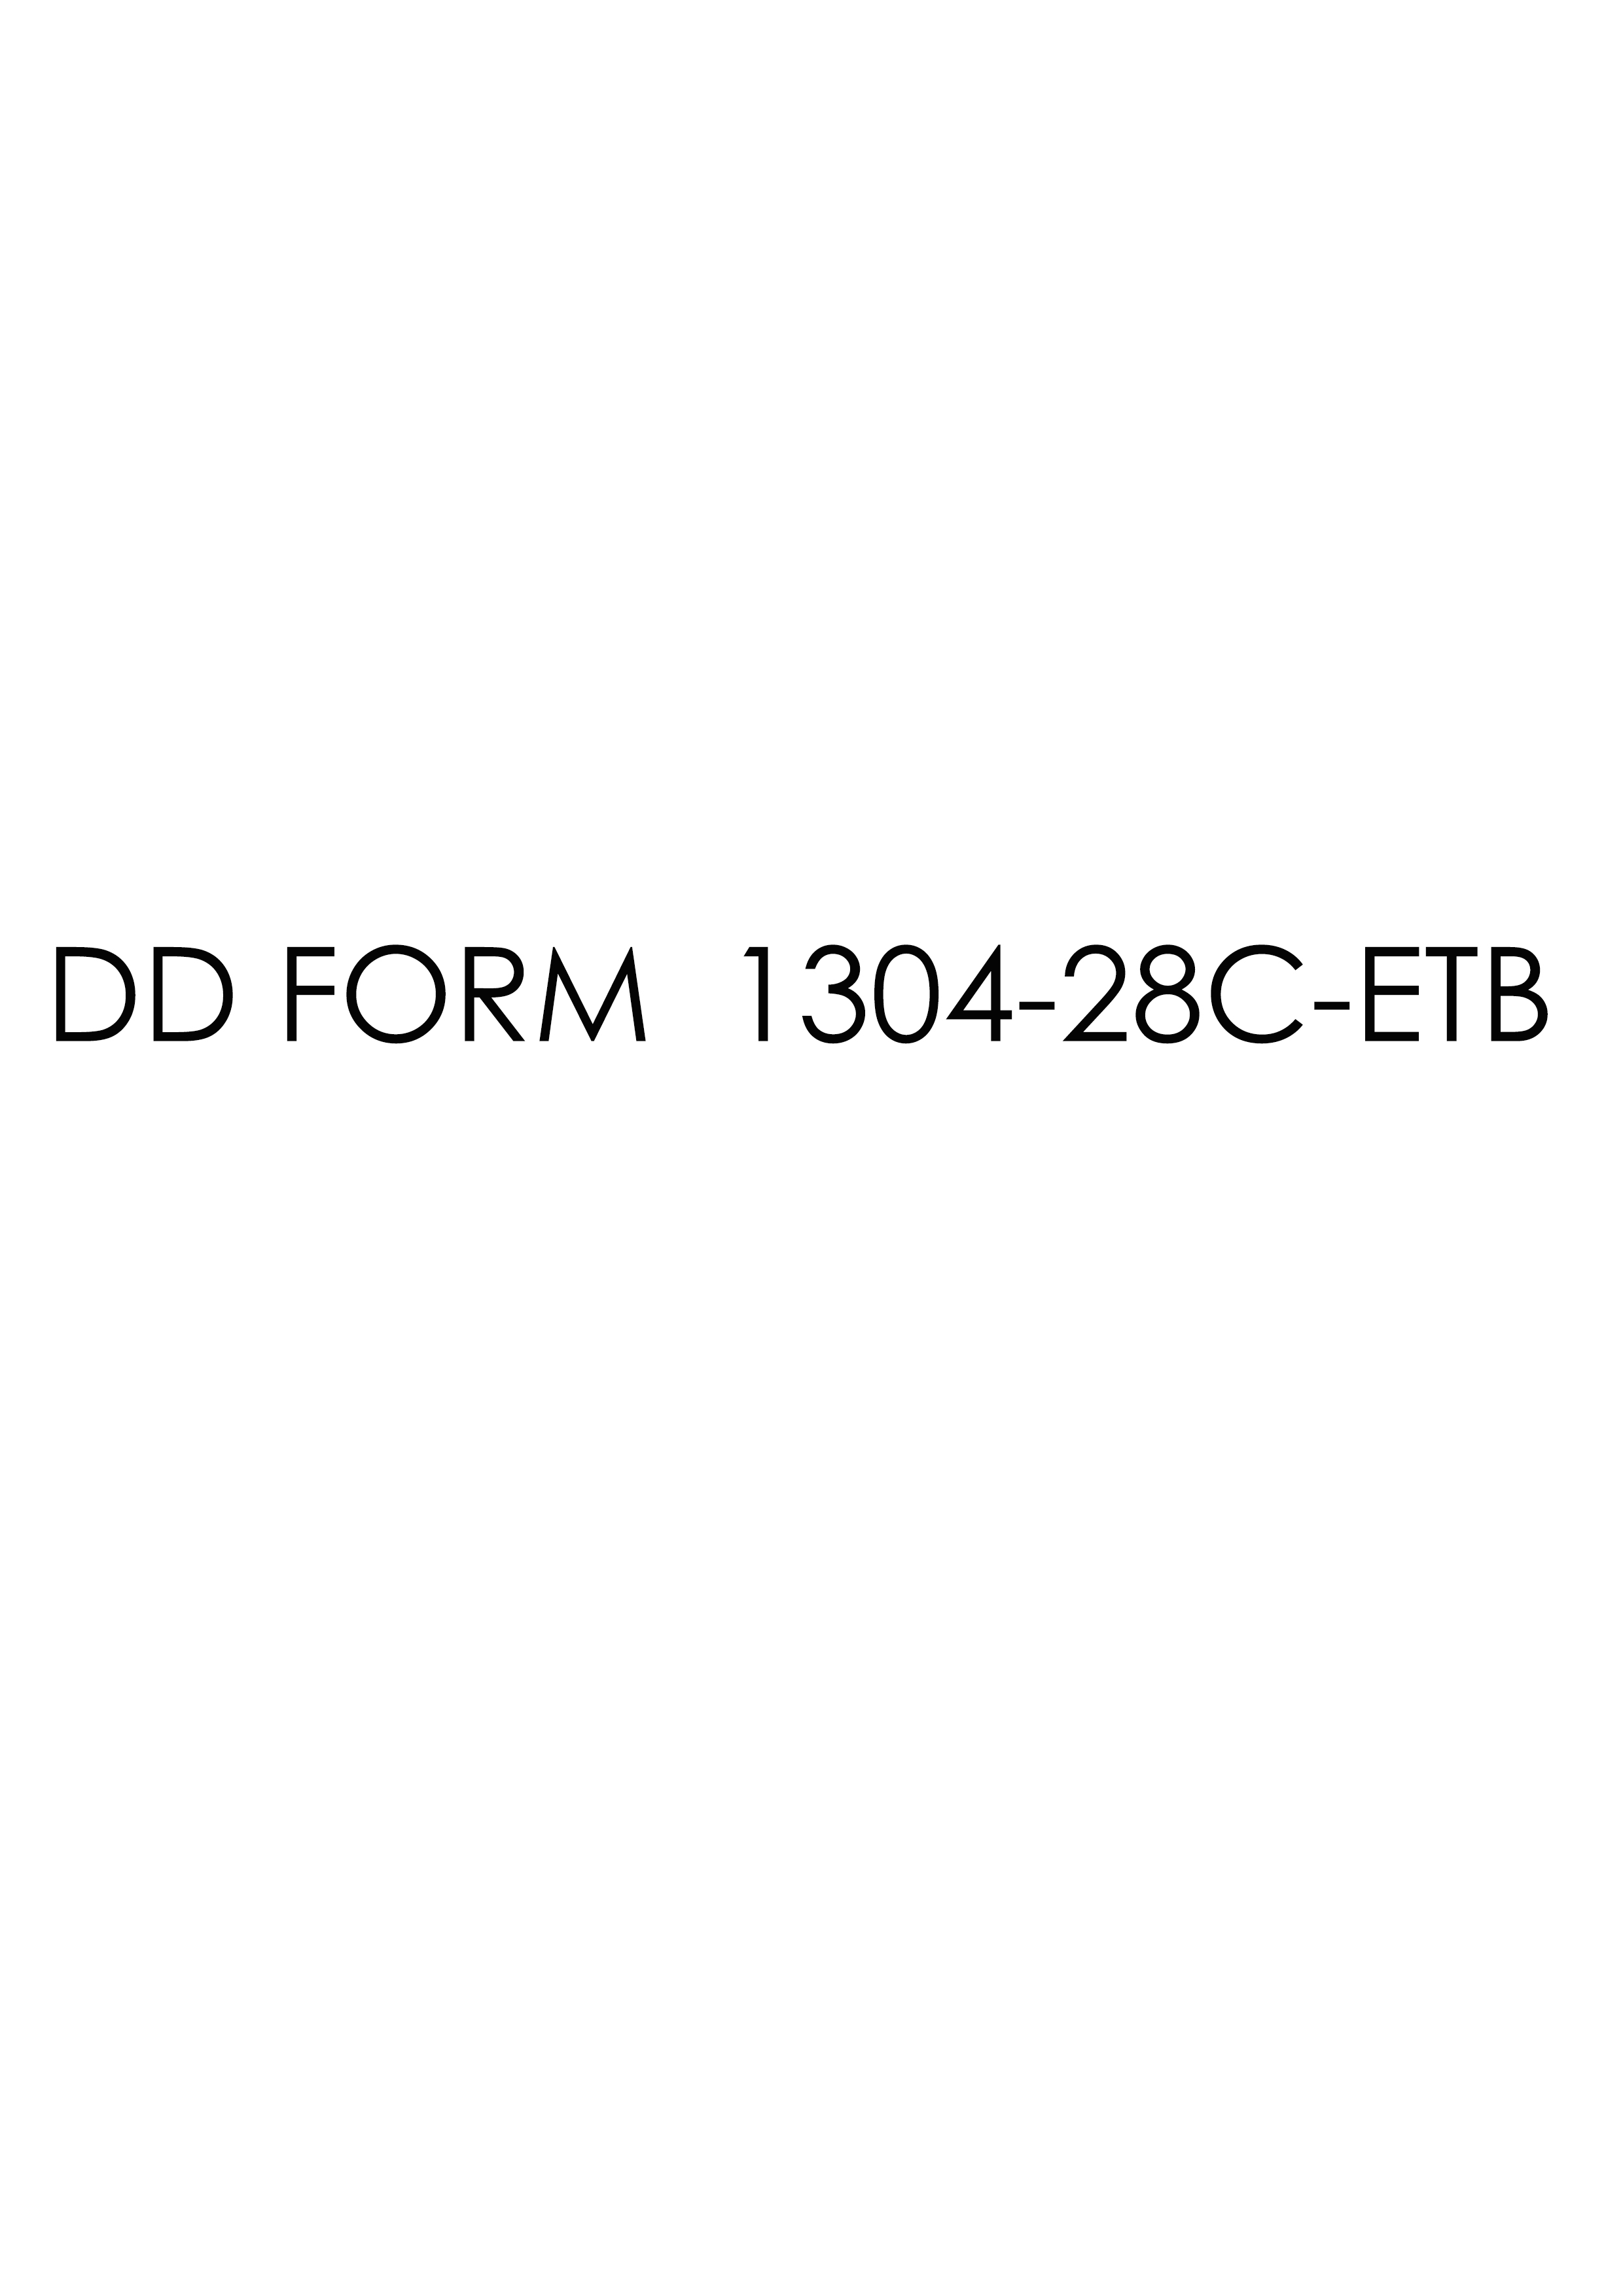 Download dd Form 1304-28C-ETB